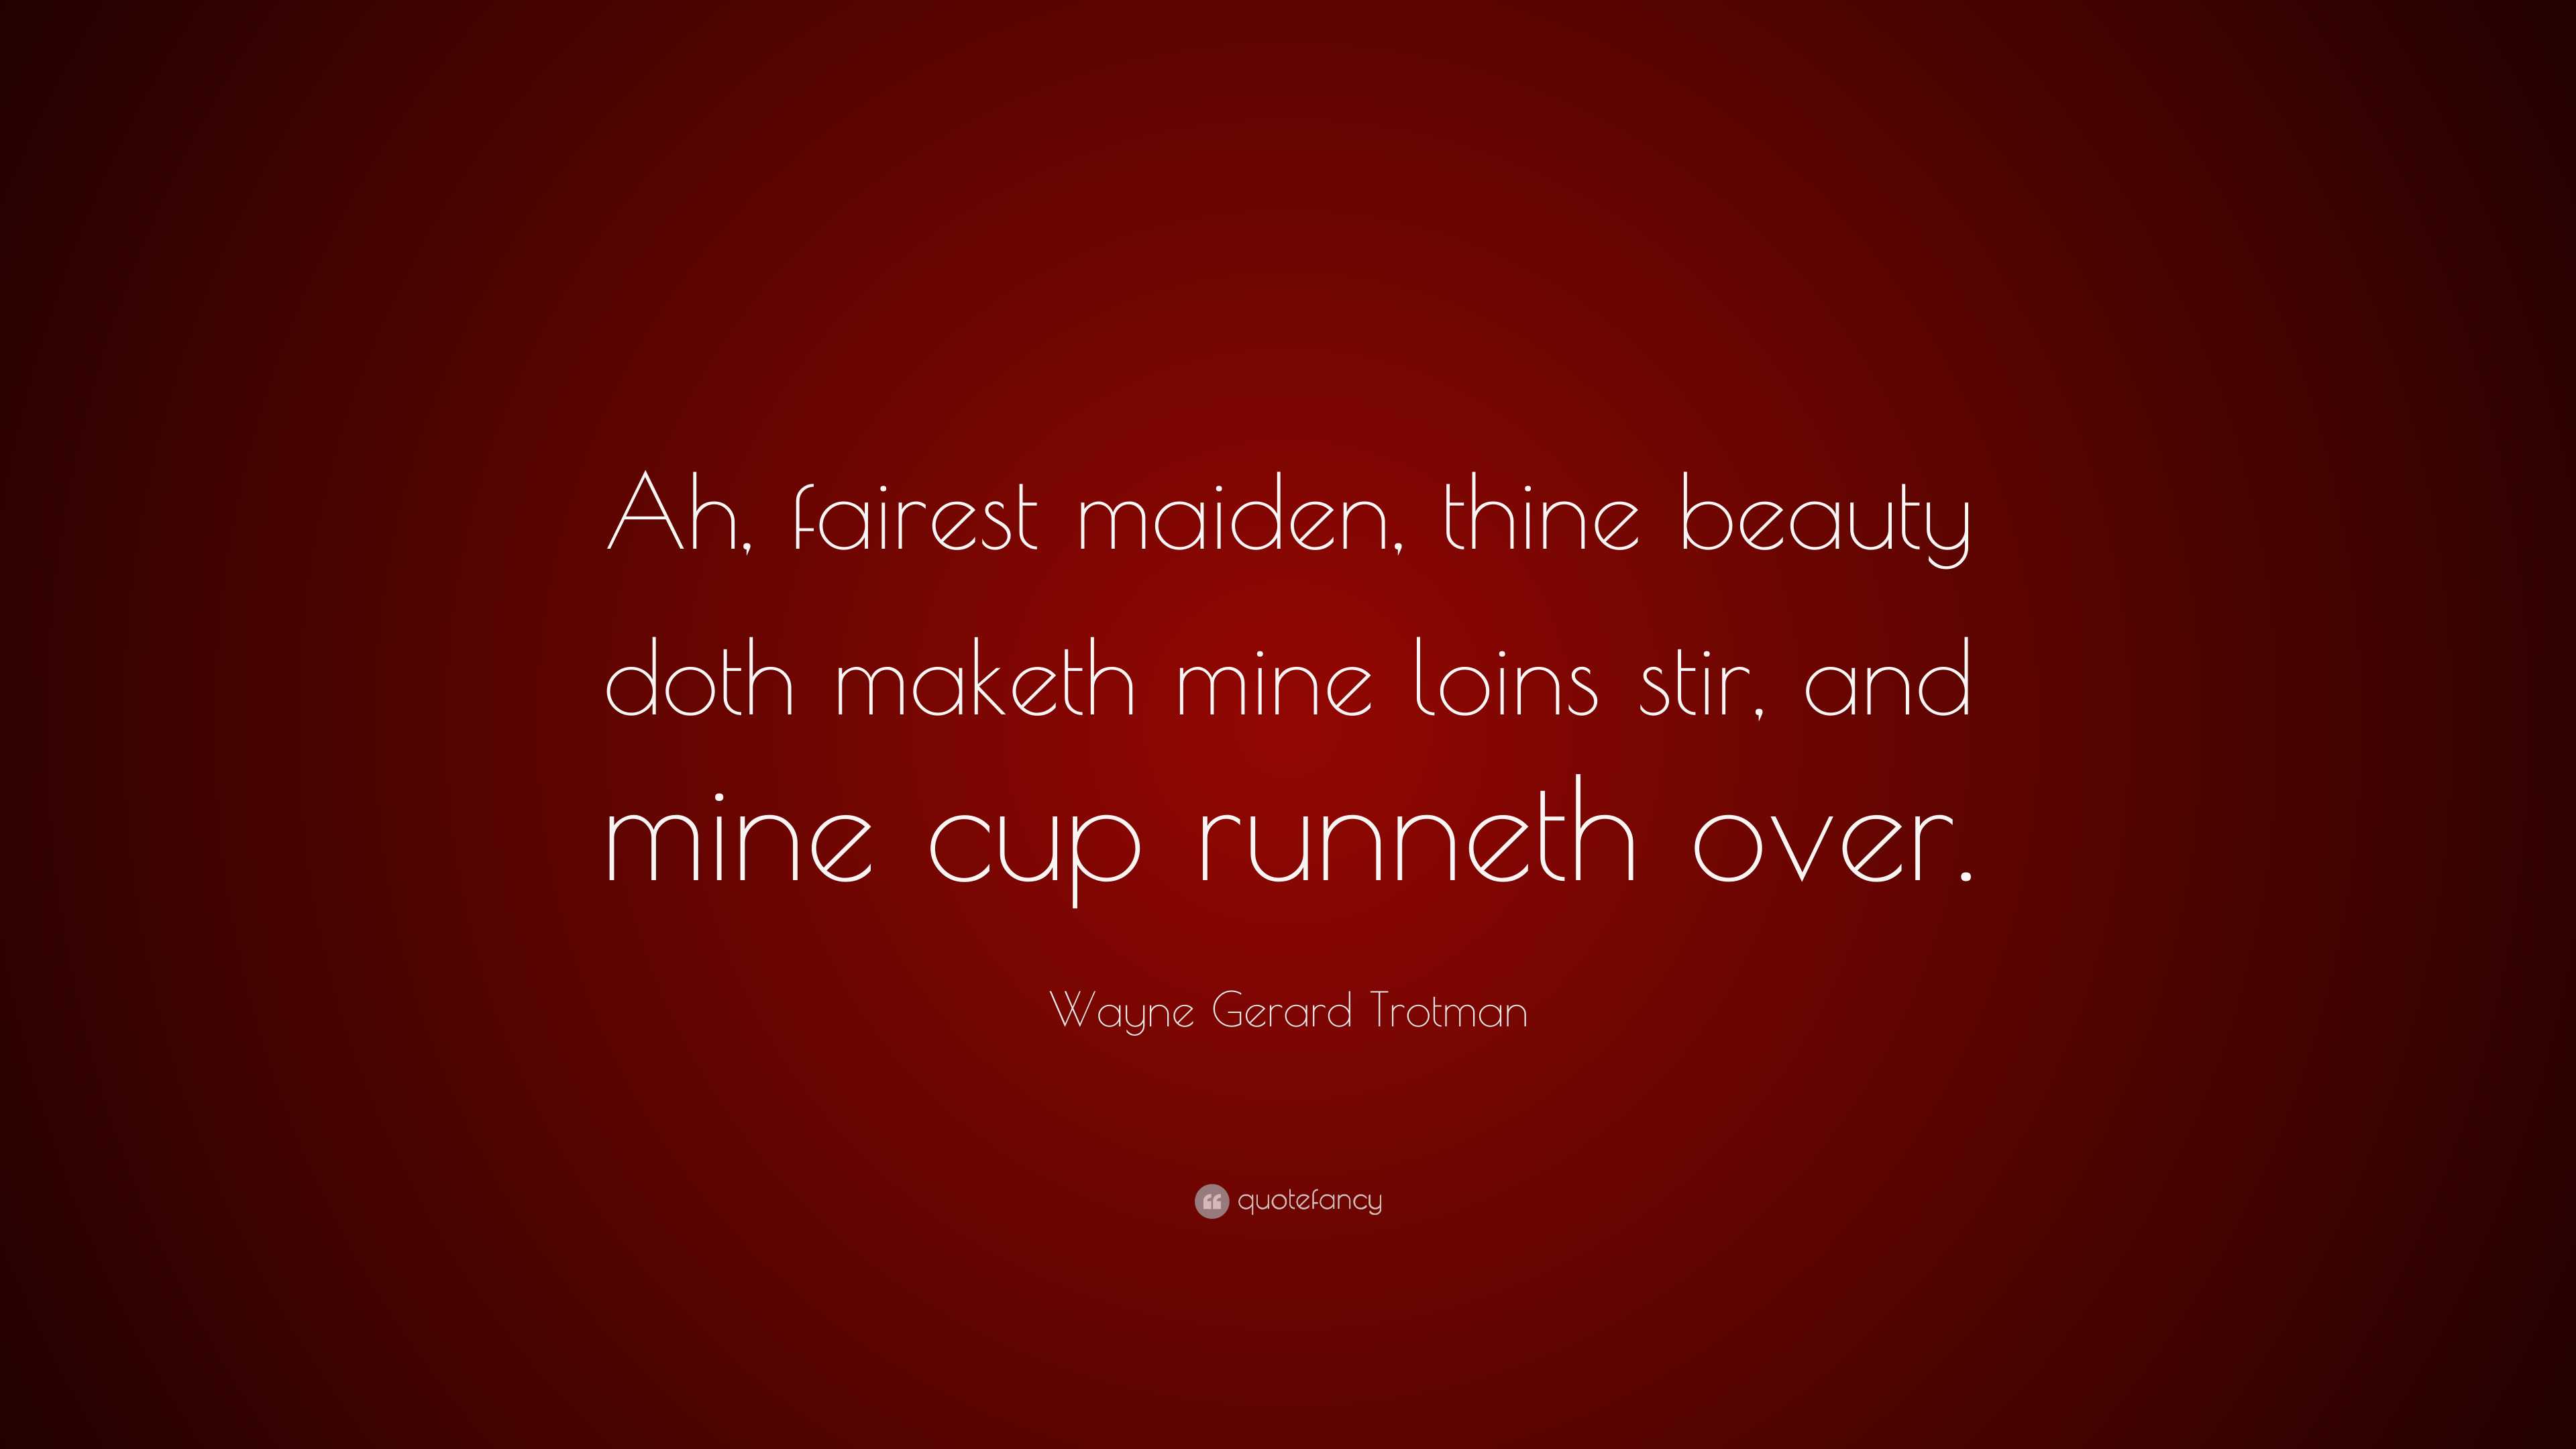 Wayne Gerard Trotman Quote: “Ah, fairest maiden, thine beauty doth maketh  mine loins stir, and mine